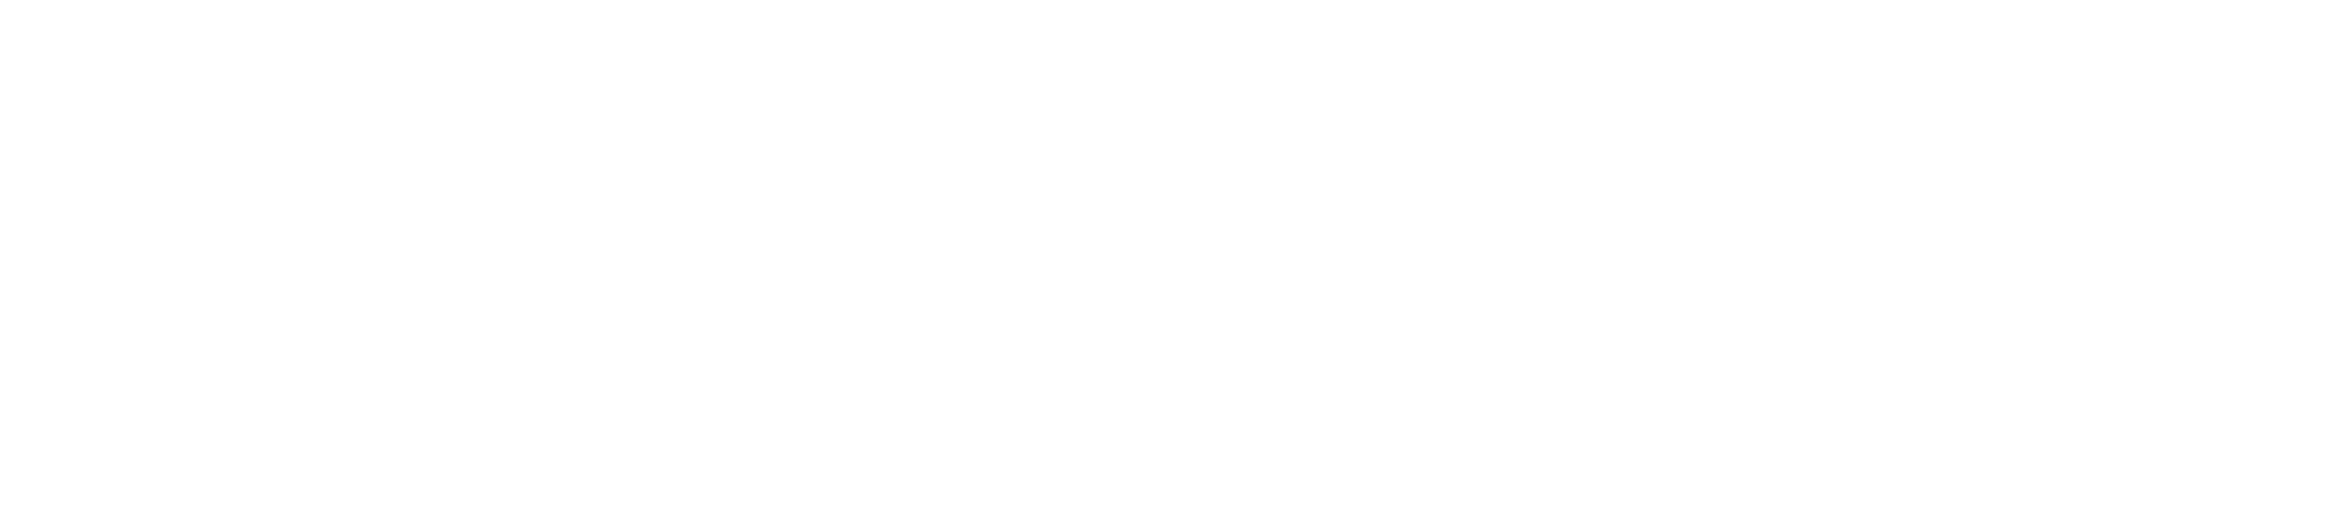 Diario El Centro